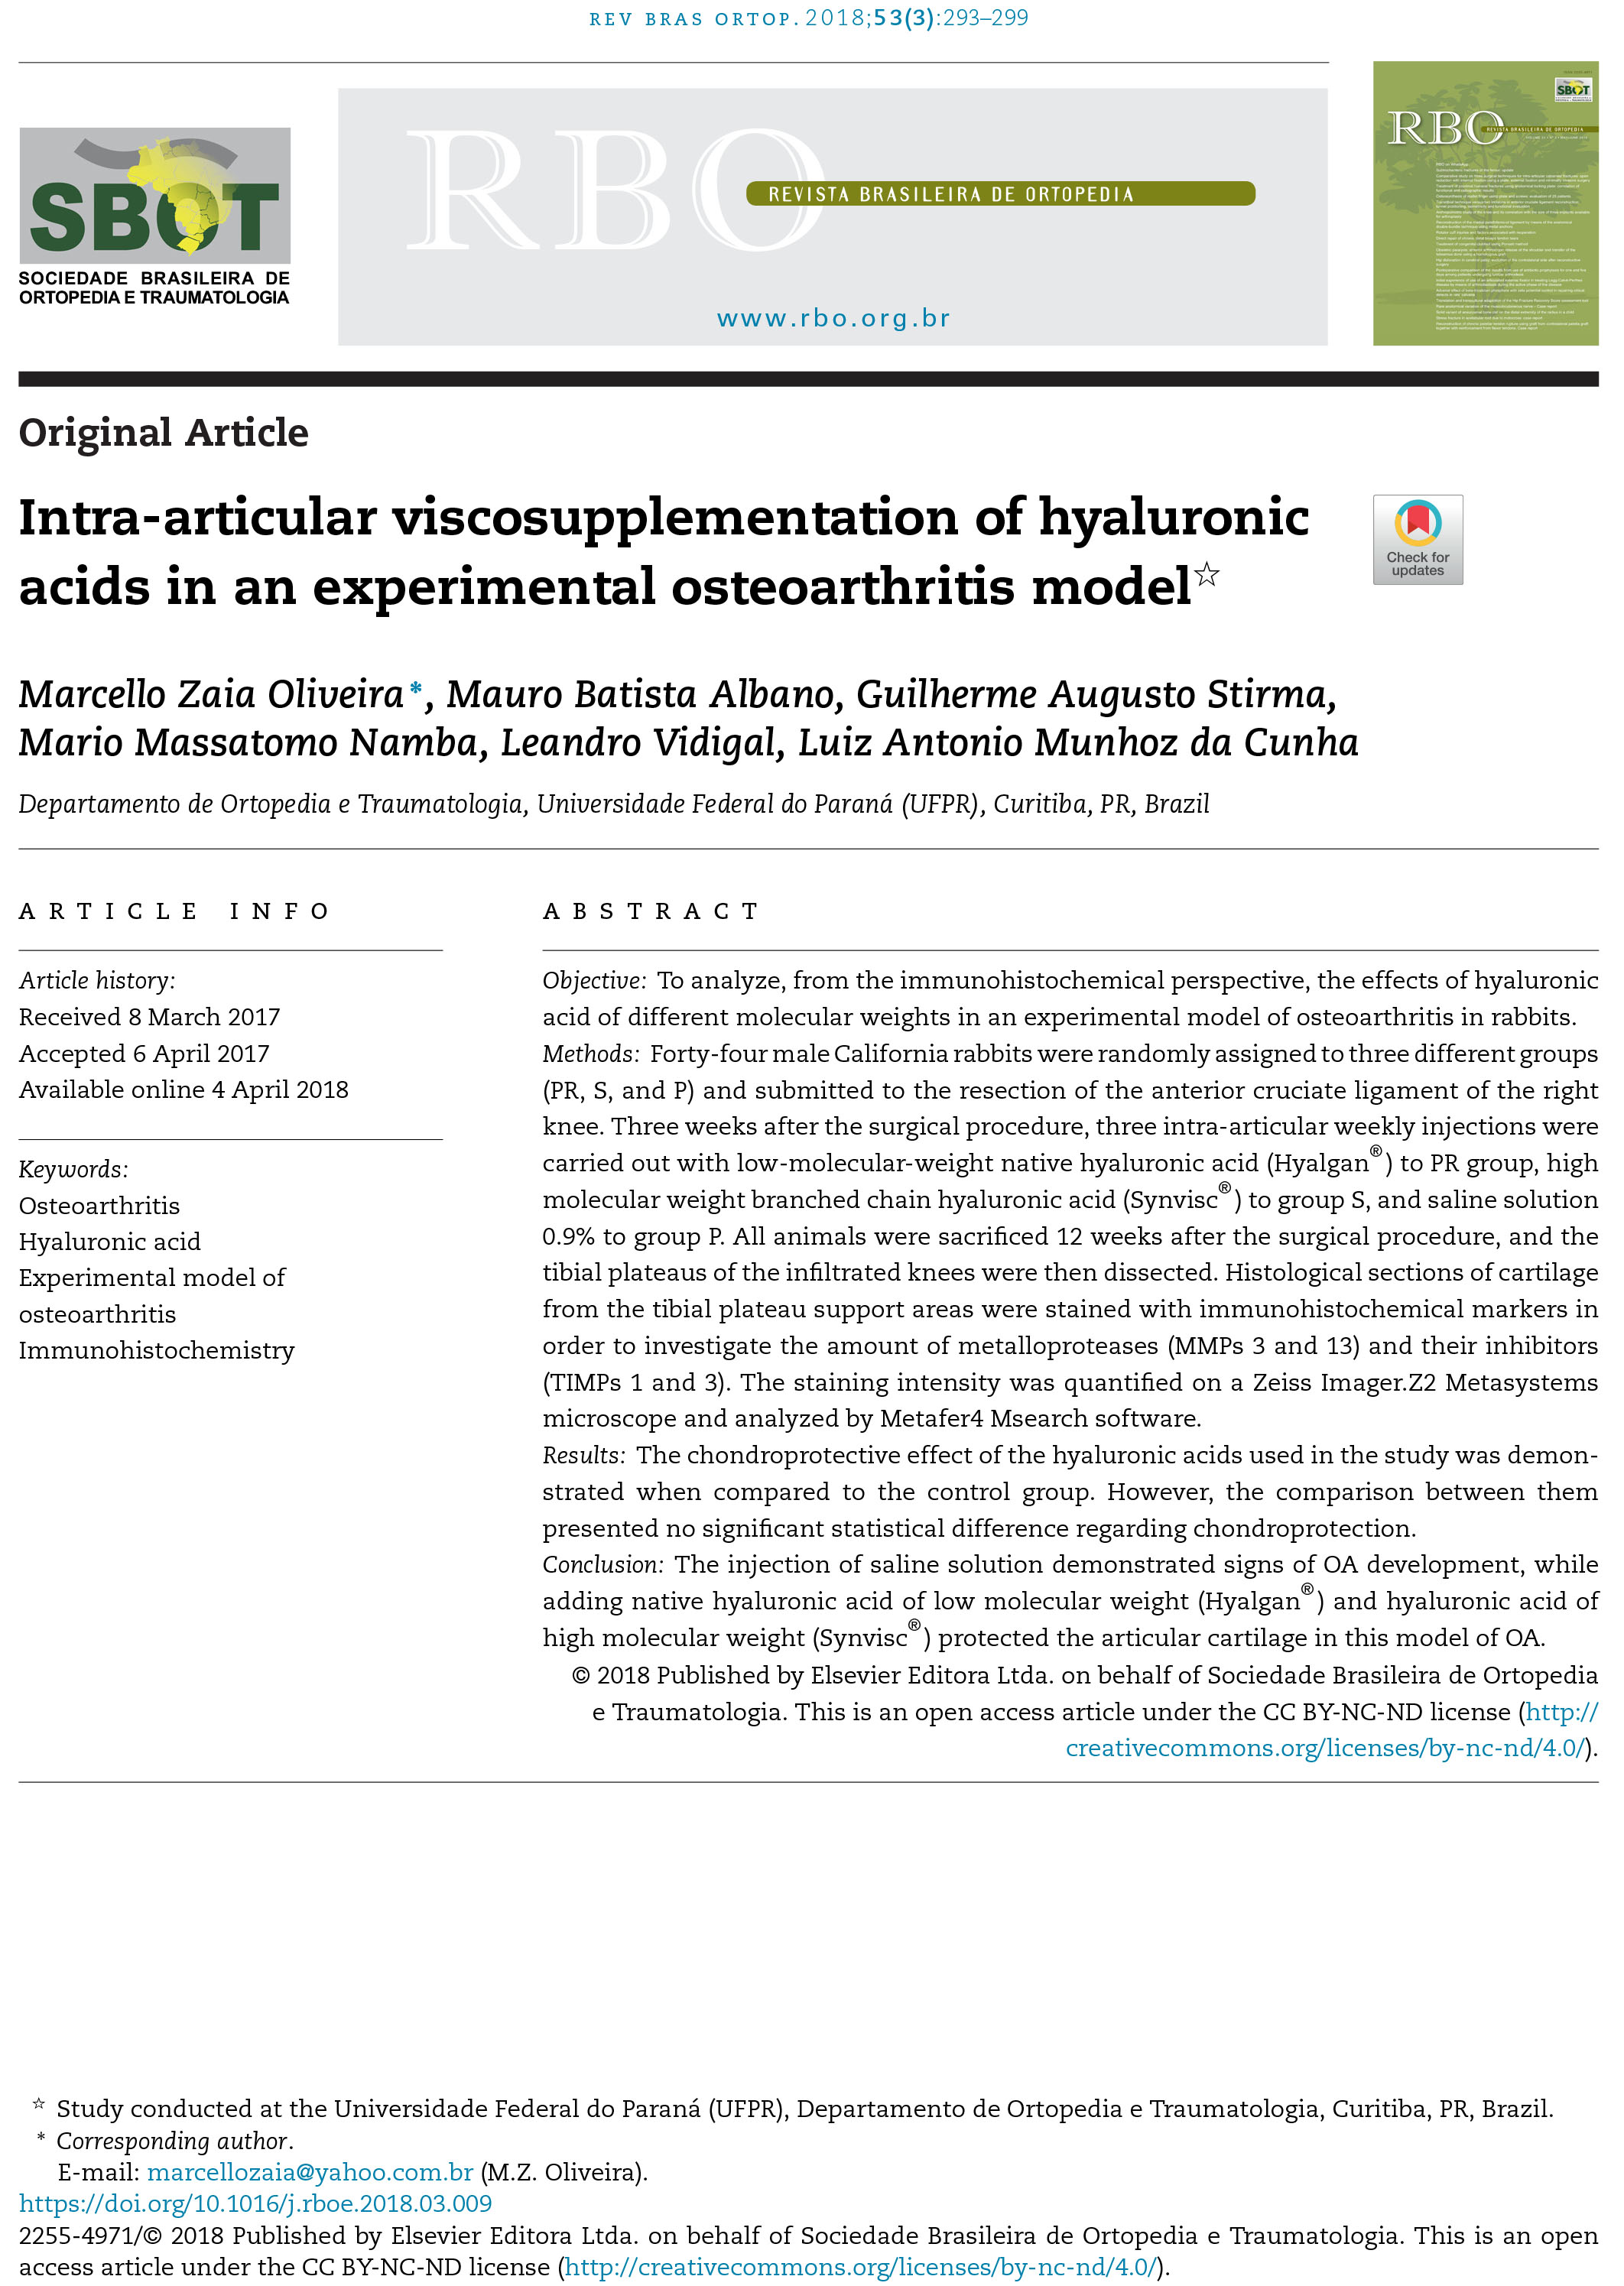 hyaluronic-acids-in-an-experimental-osteoarthritis-model-1.jpg